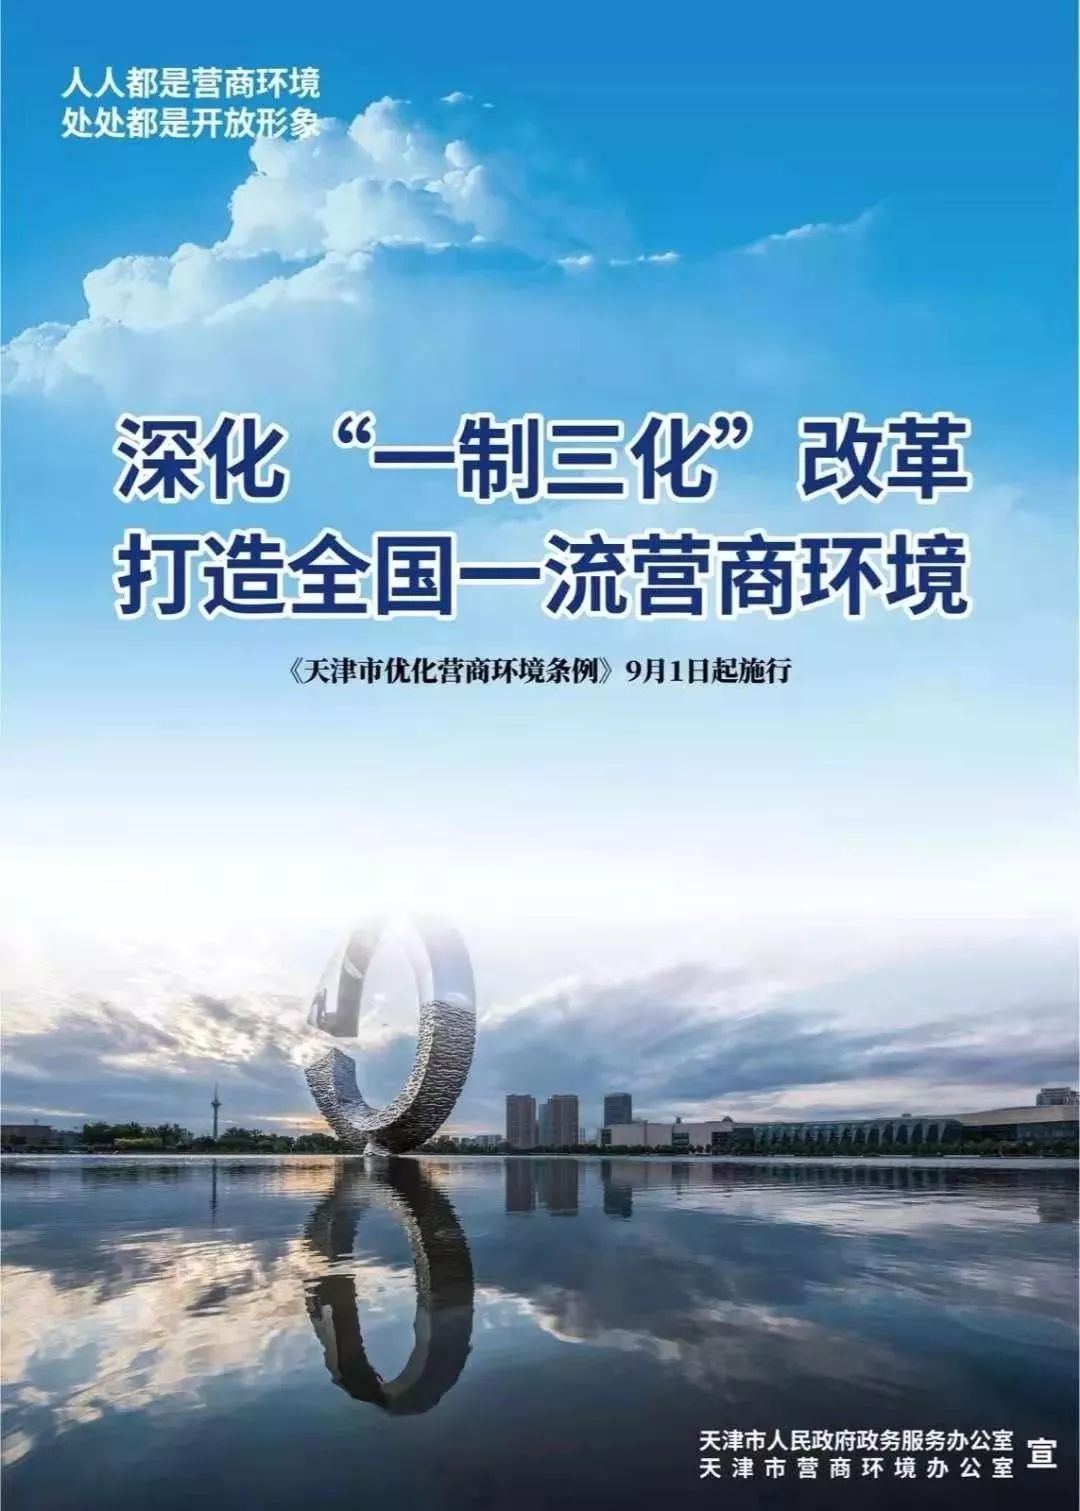 中心宣传已就位~《天津市优化营商环境条例》9月